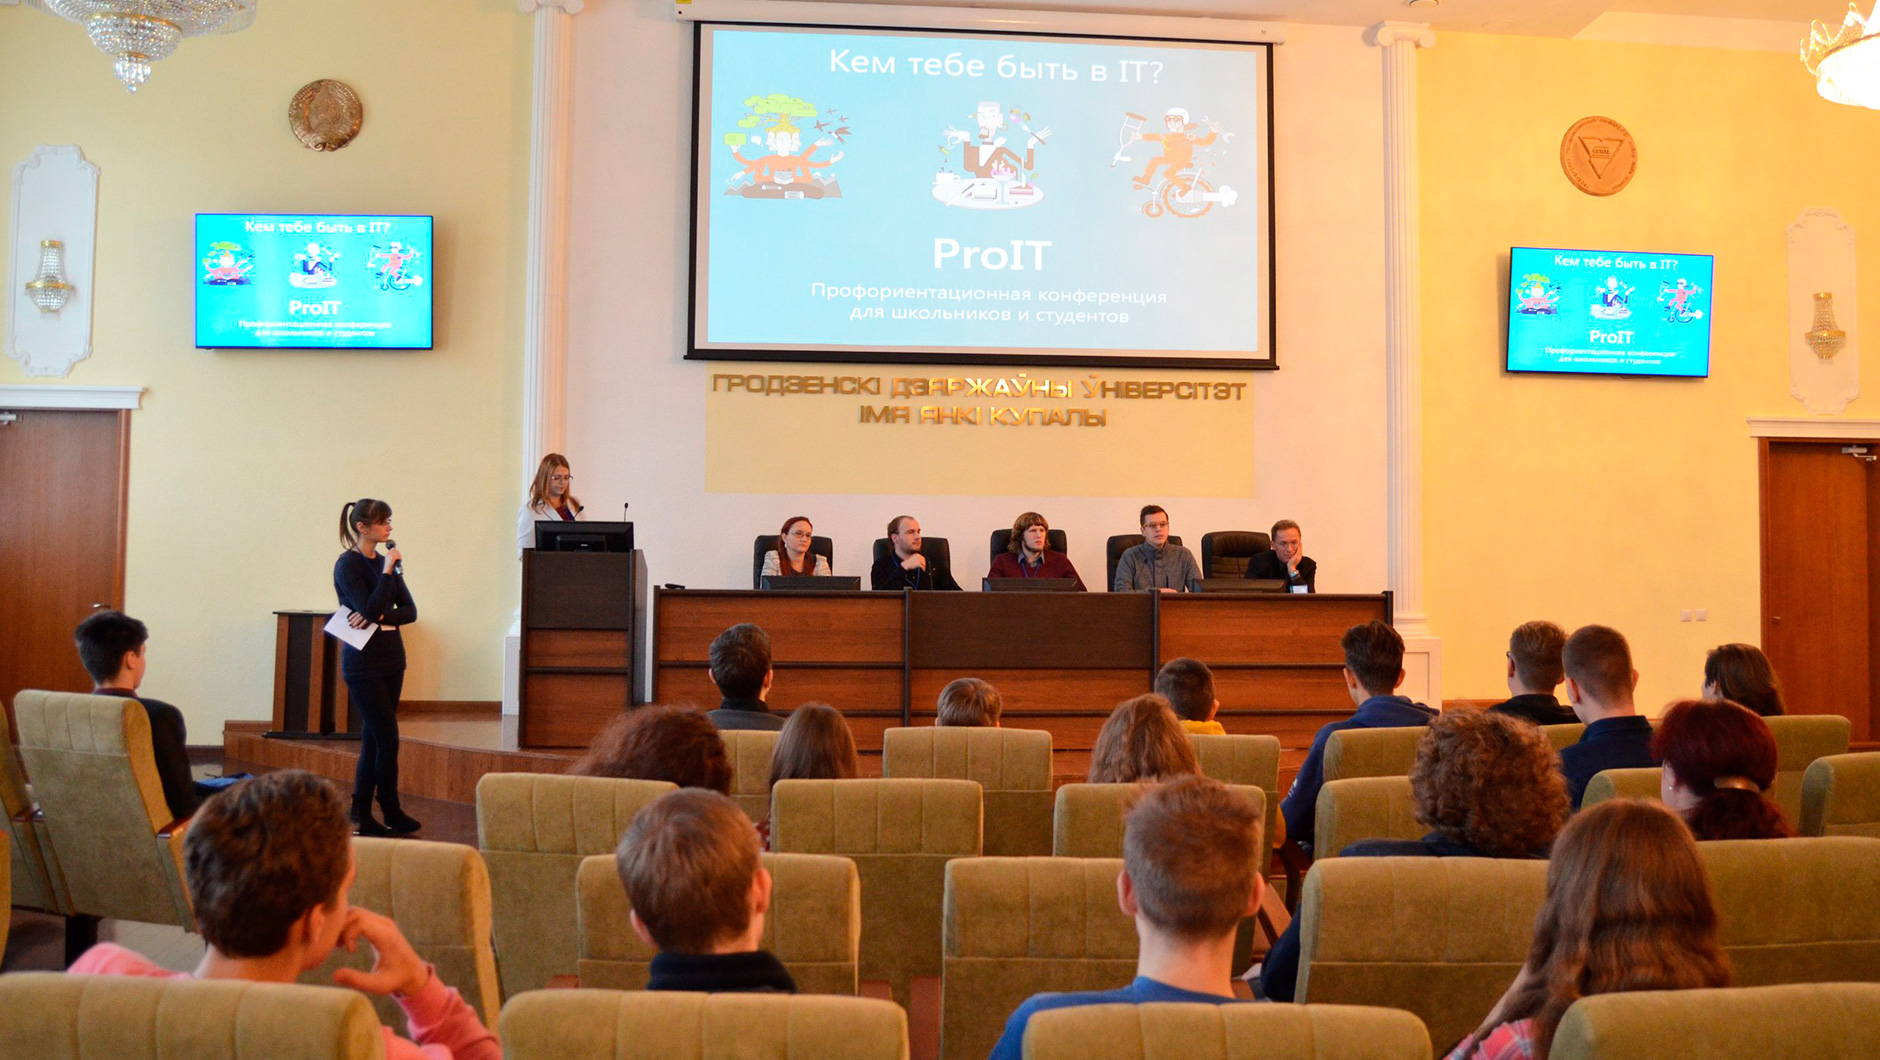 Профориентационная конференция для школьников и студентов ProIT